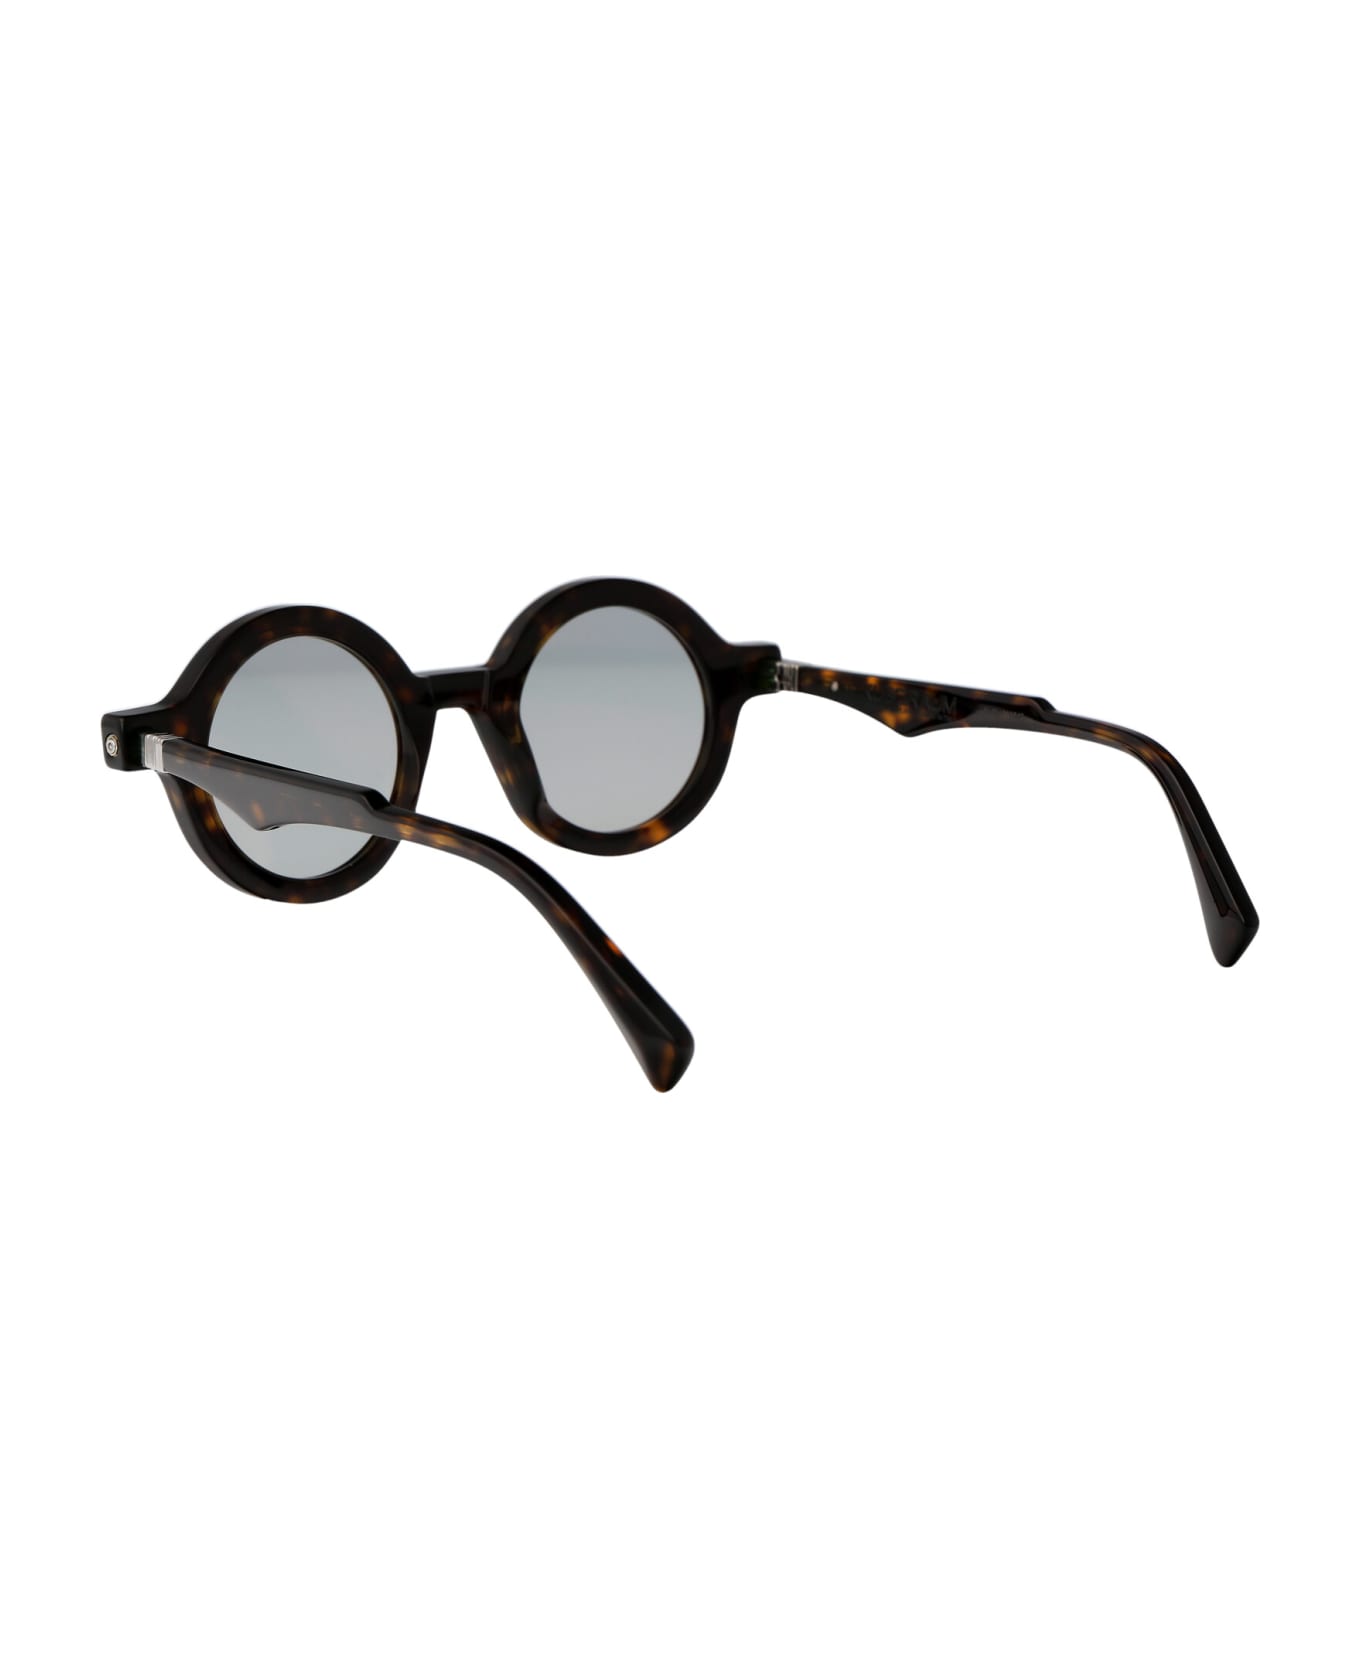 Kuboraum Maske Q7 Sunglasses - TS grey1 サングラス